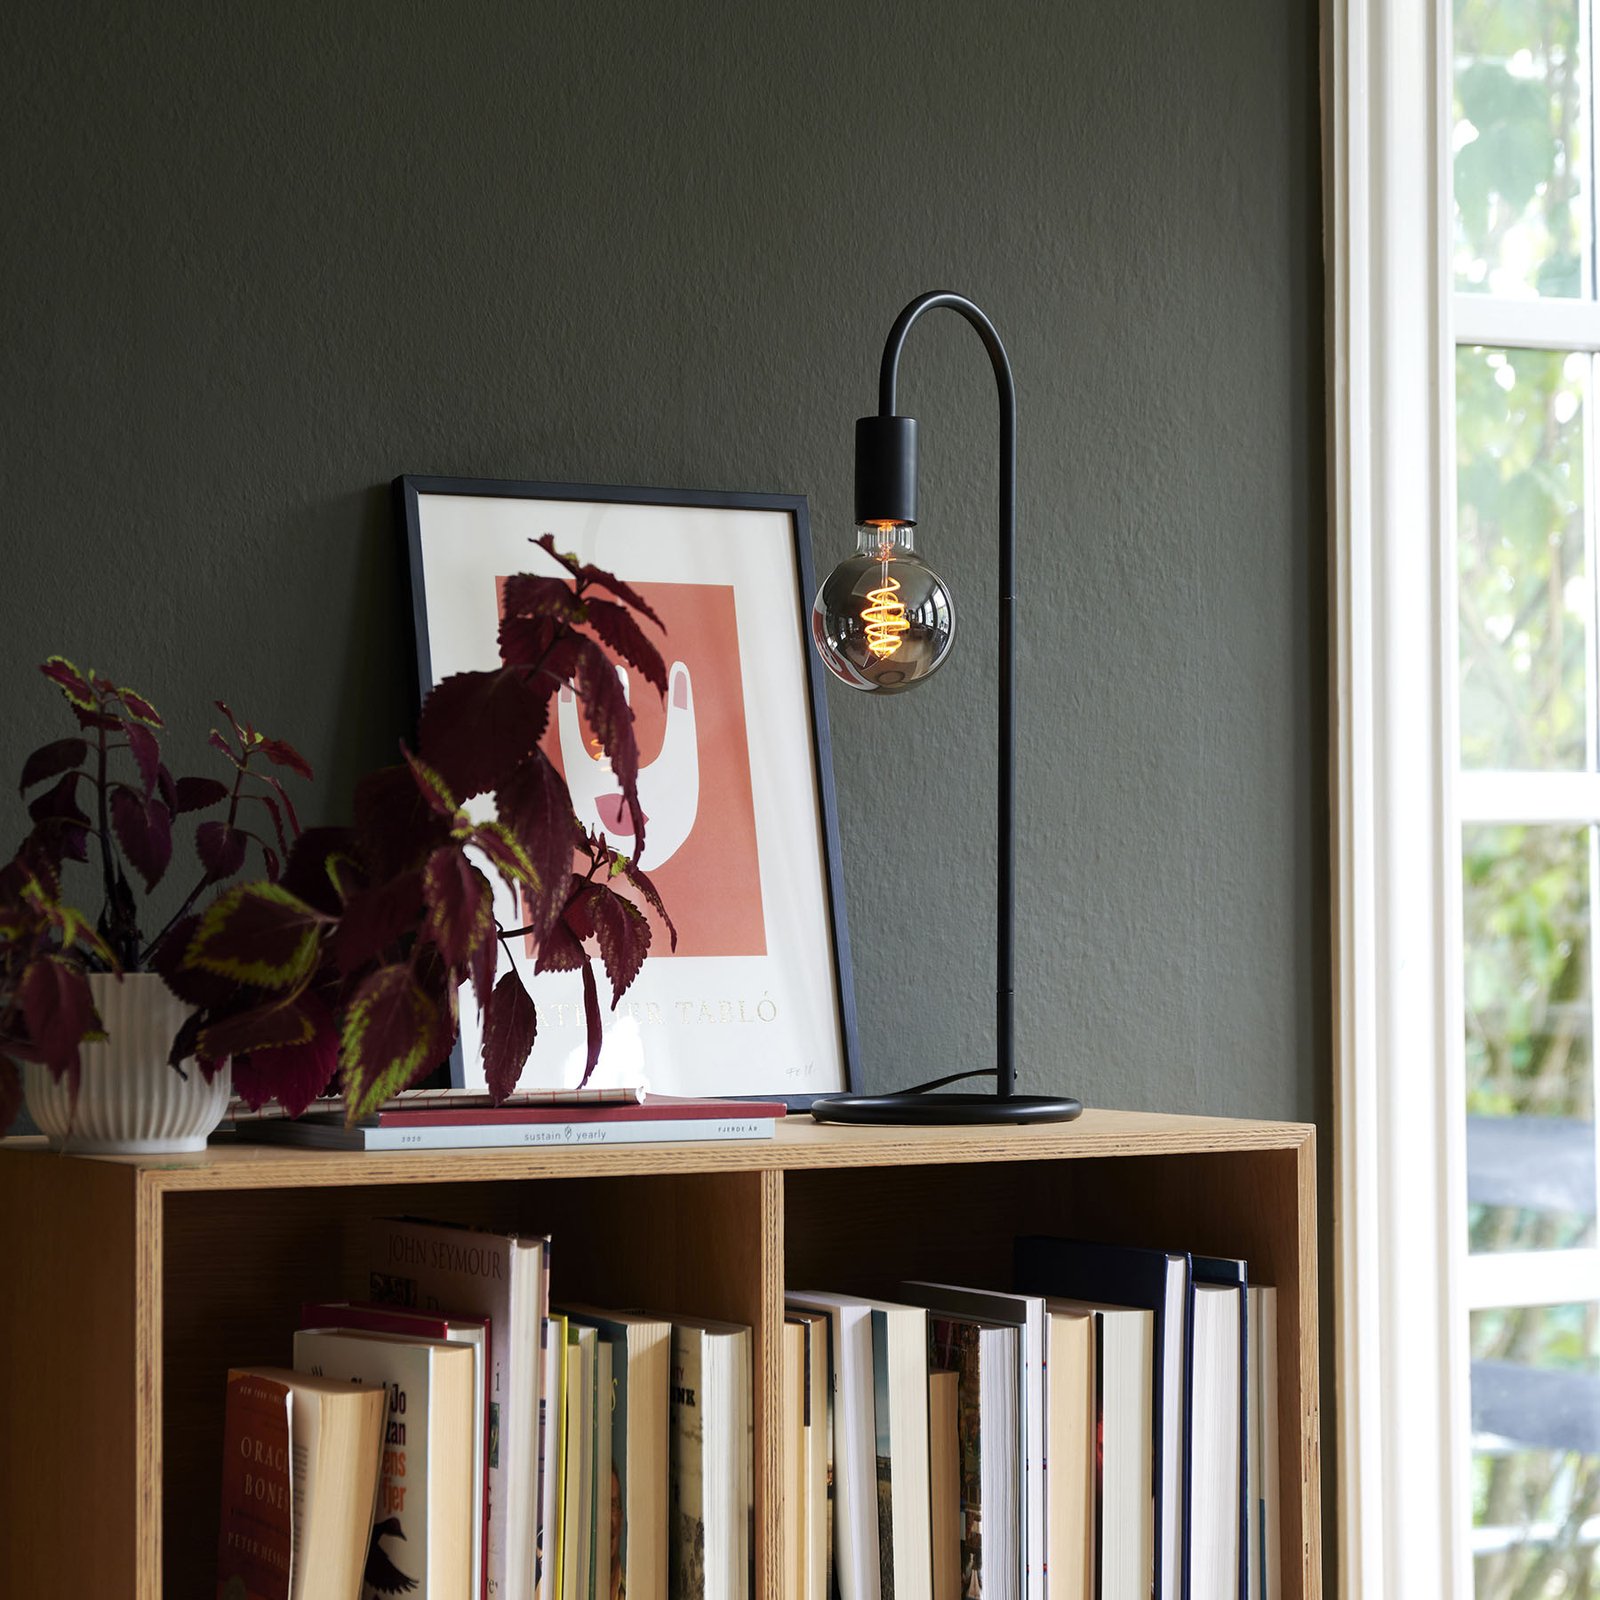 Paco stolna lampa u minimalističkom stilu